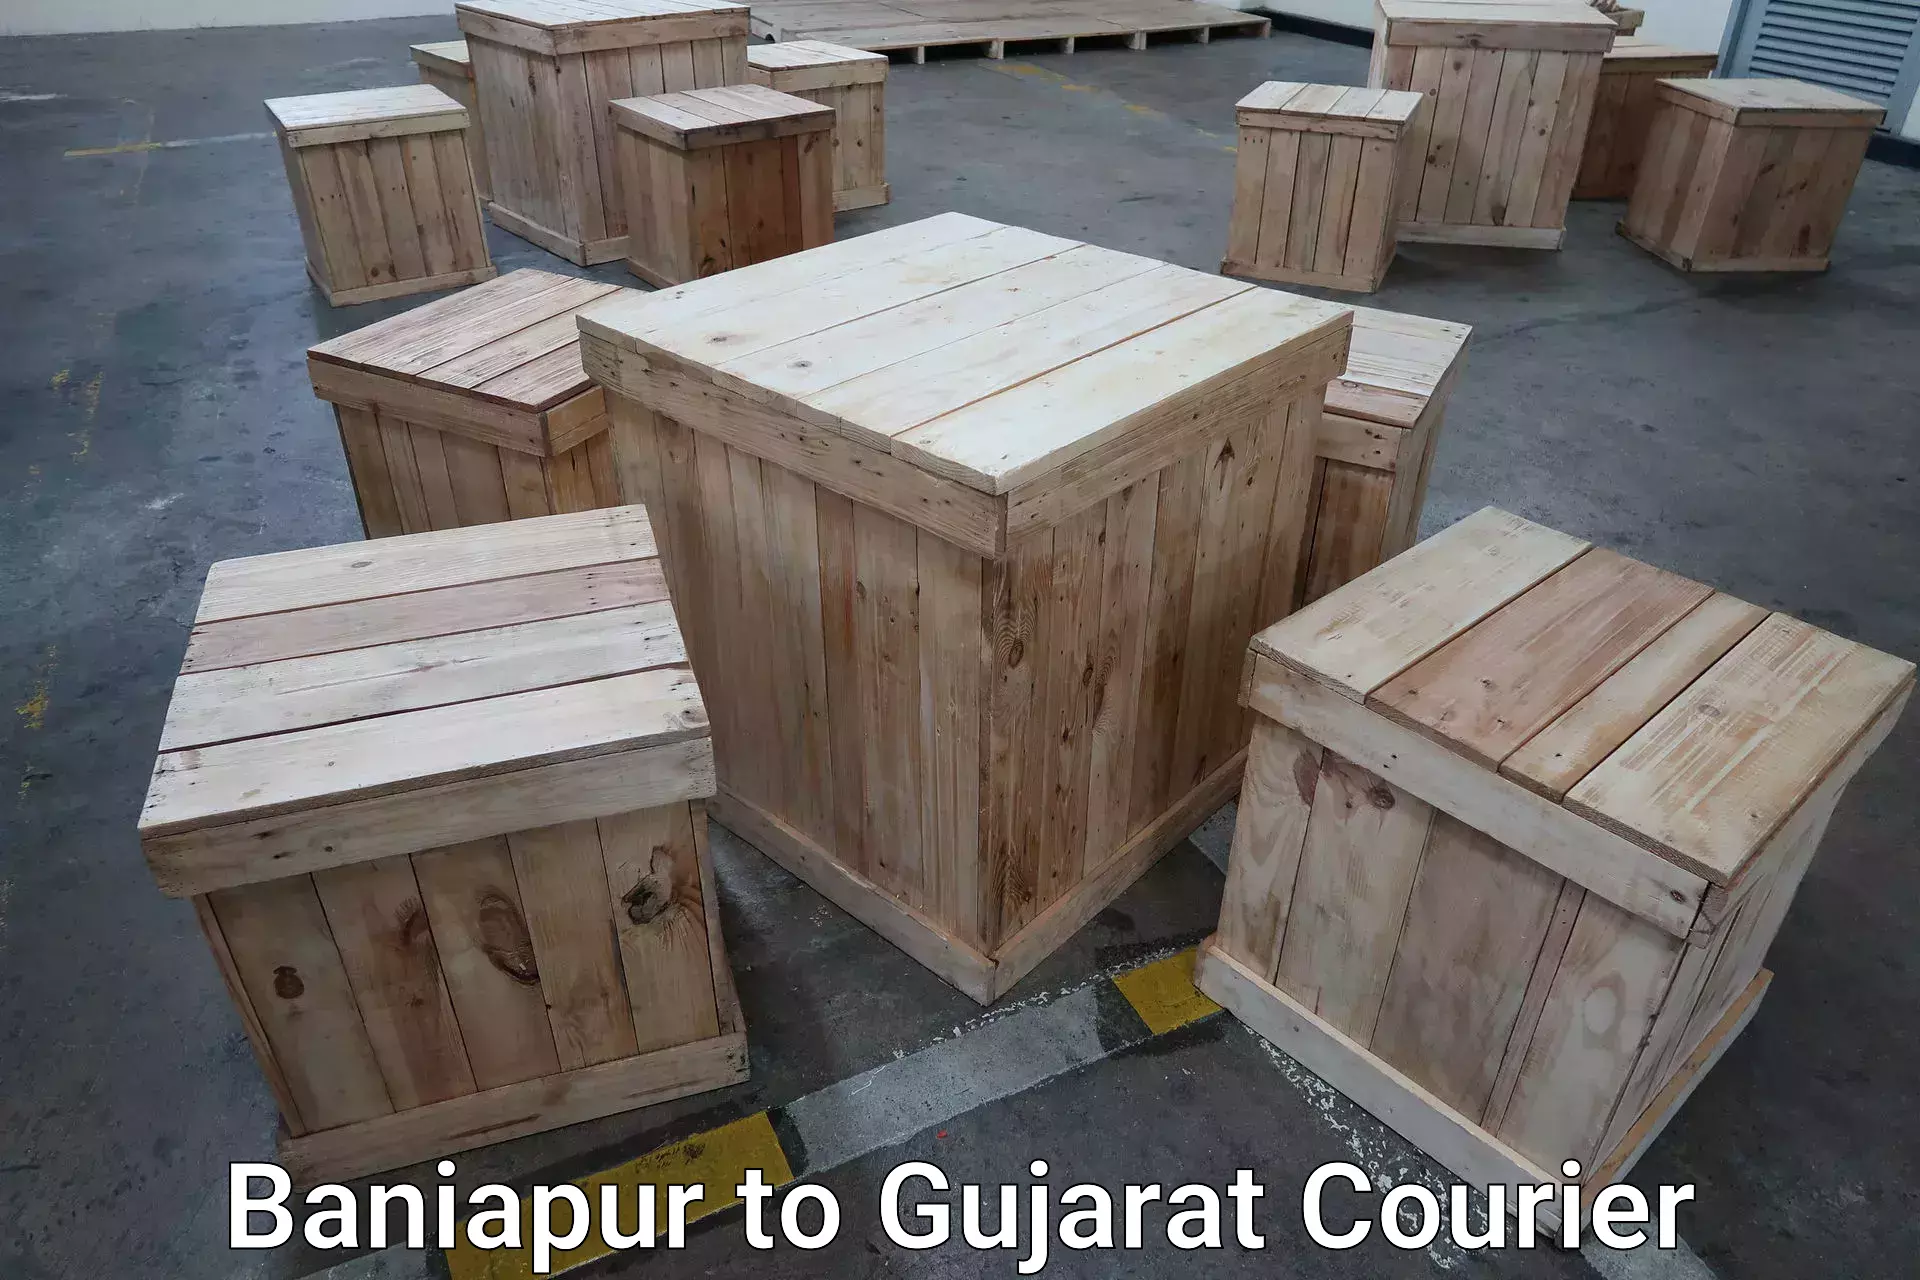 Luggage transport service Baniapur to Gujarat